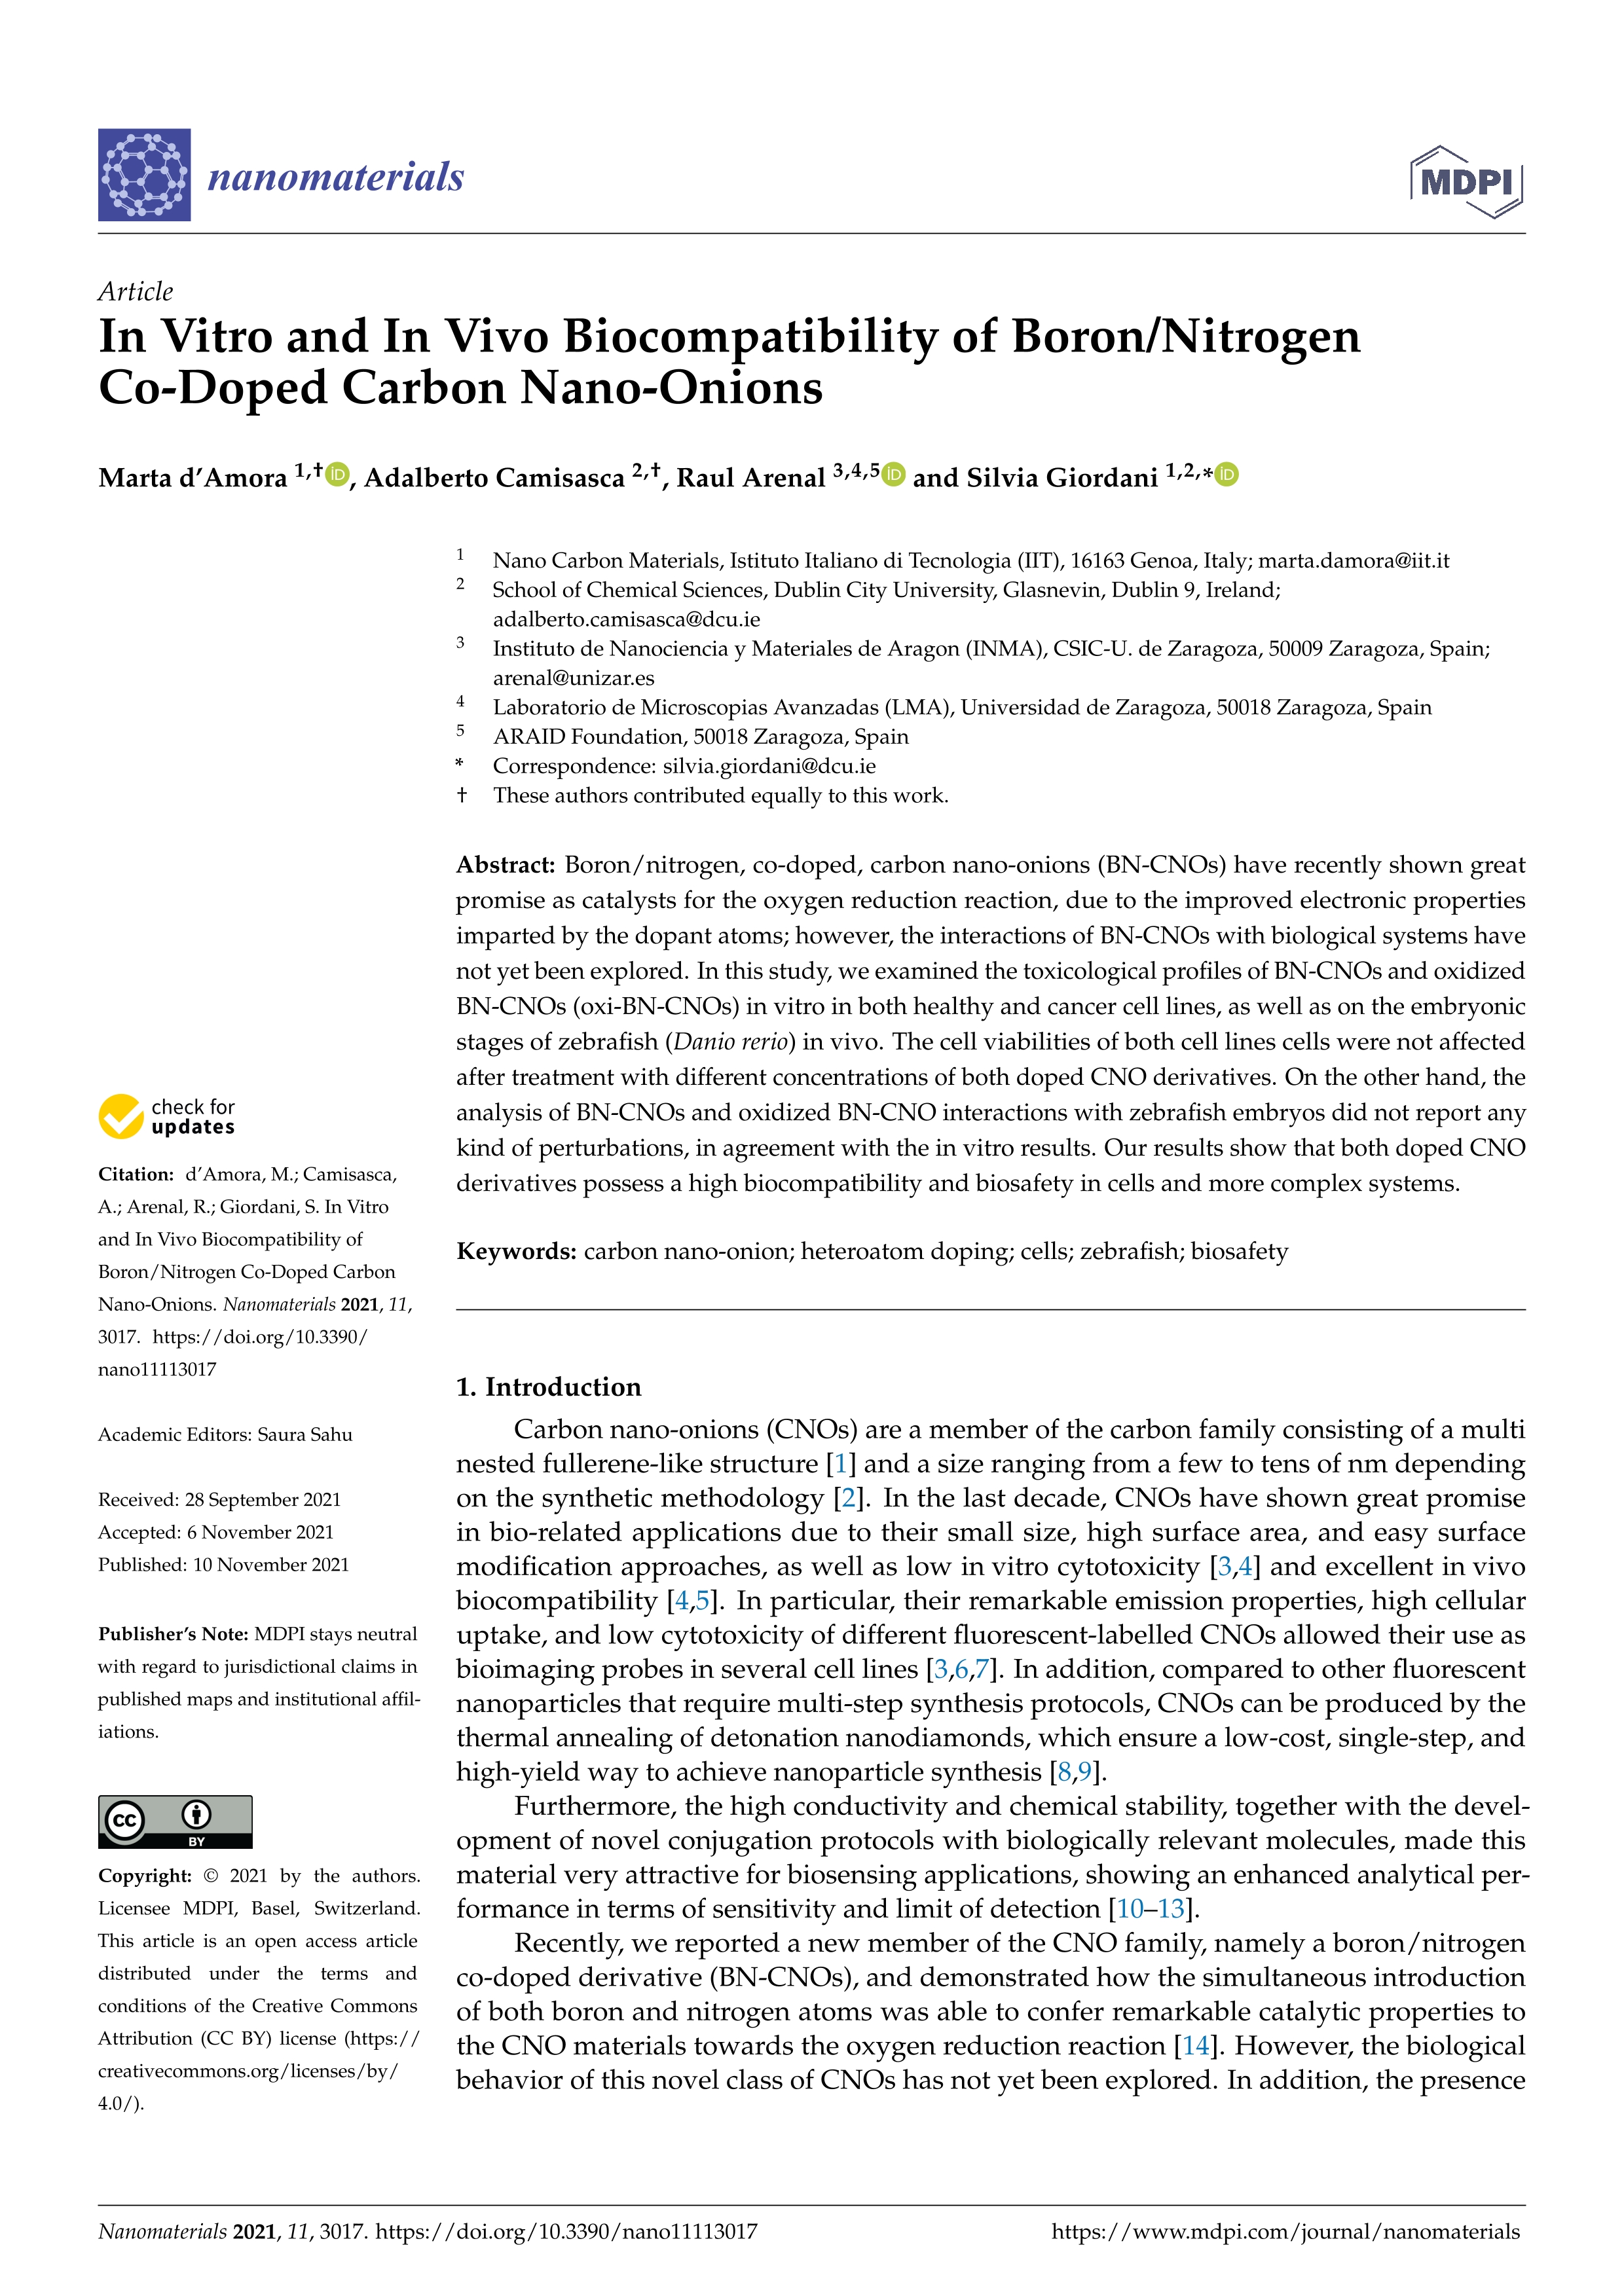 In vitro and in vivo biocompatibility of boron/nitrogen co-doped carbon nano-onions